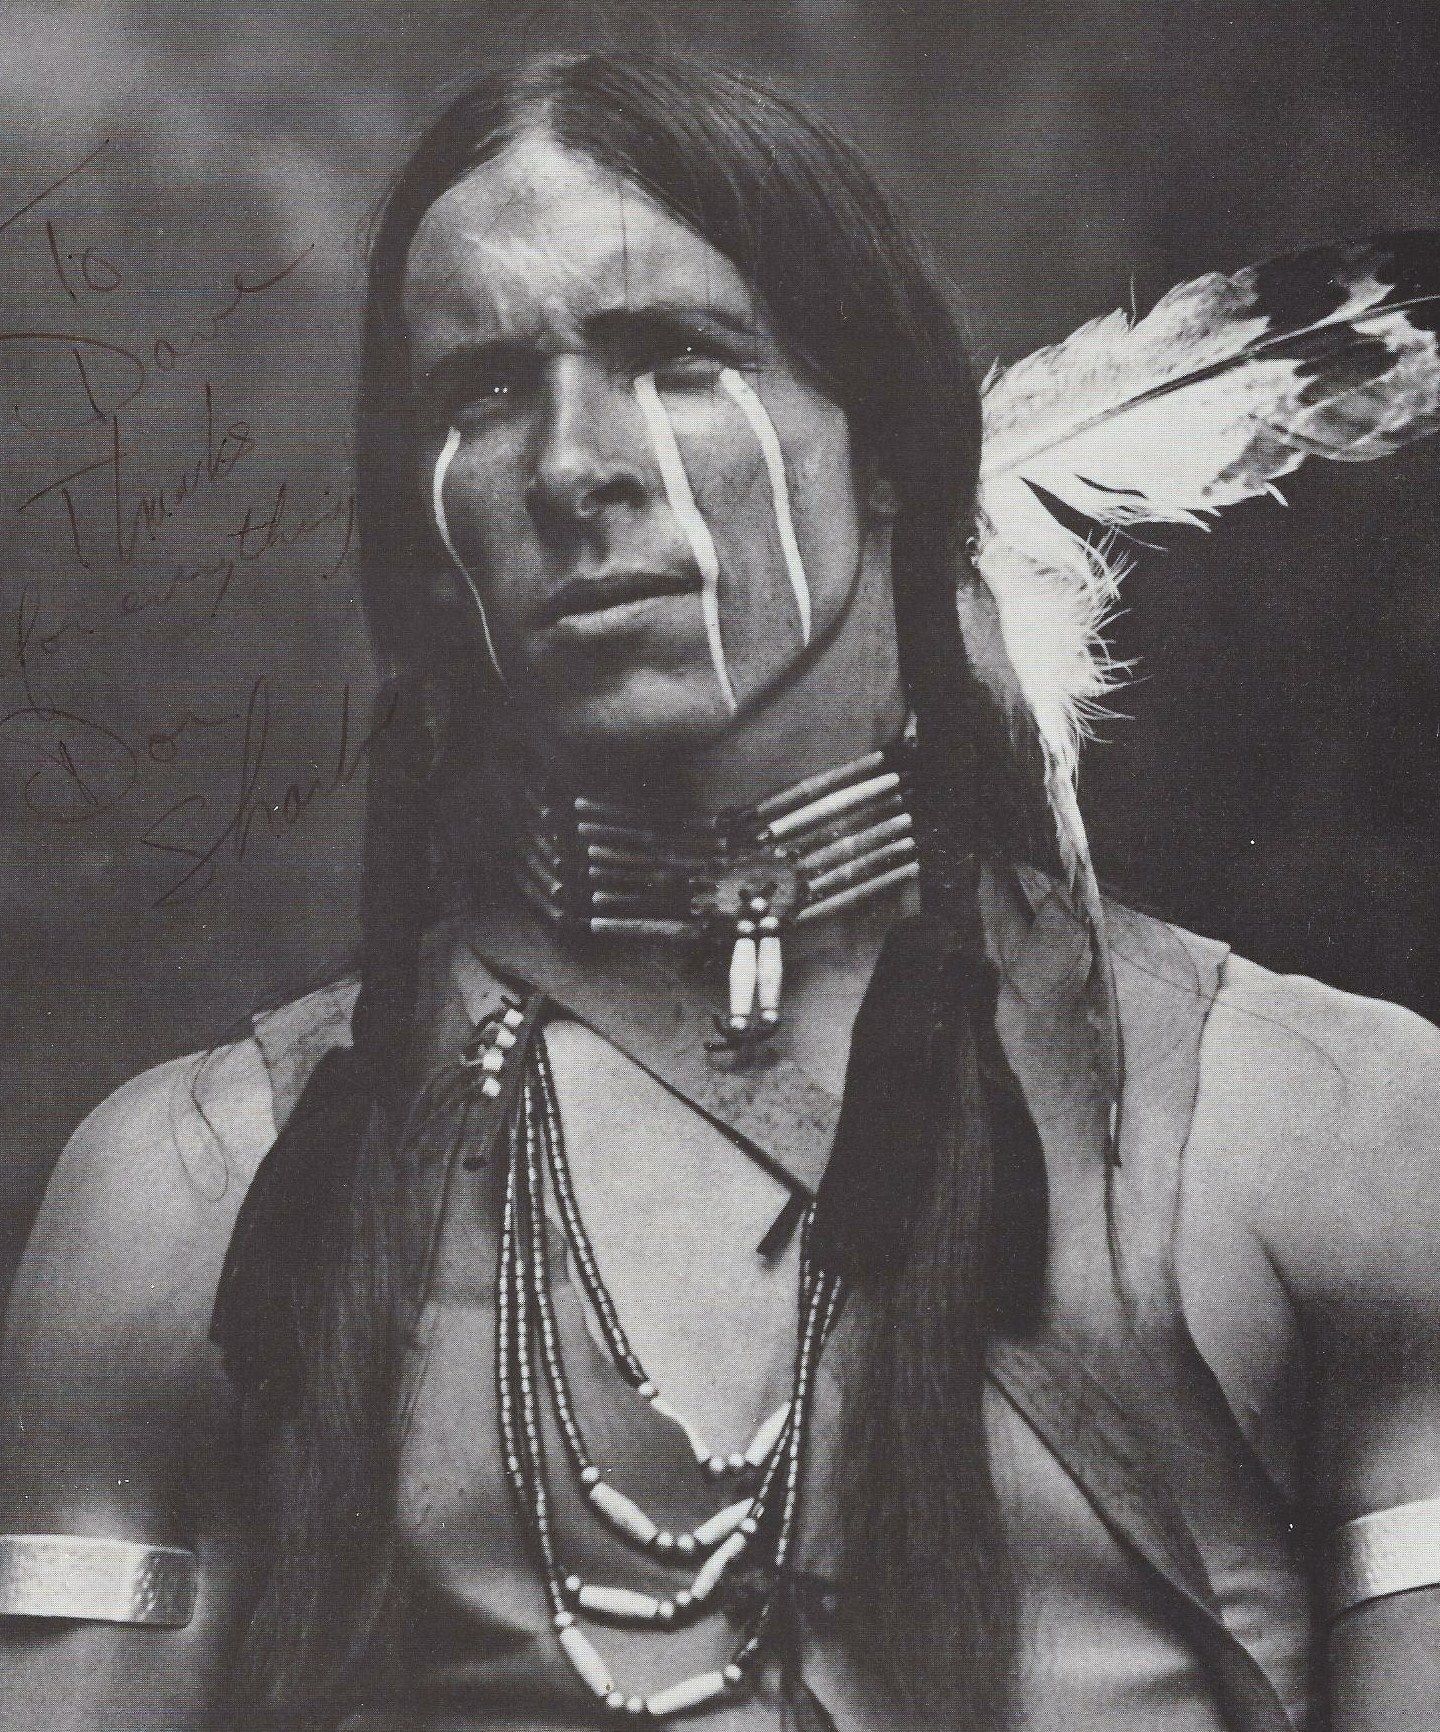 Индейцы в современной америке. Могикане индейцы Северной Америки. Апачи индейцы. Индейцы племени Апачи. Североамериканские индейцы Апачи.